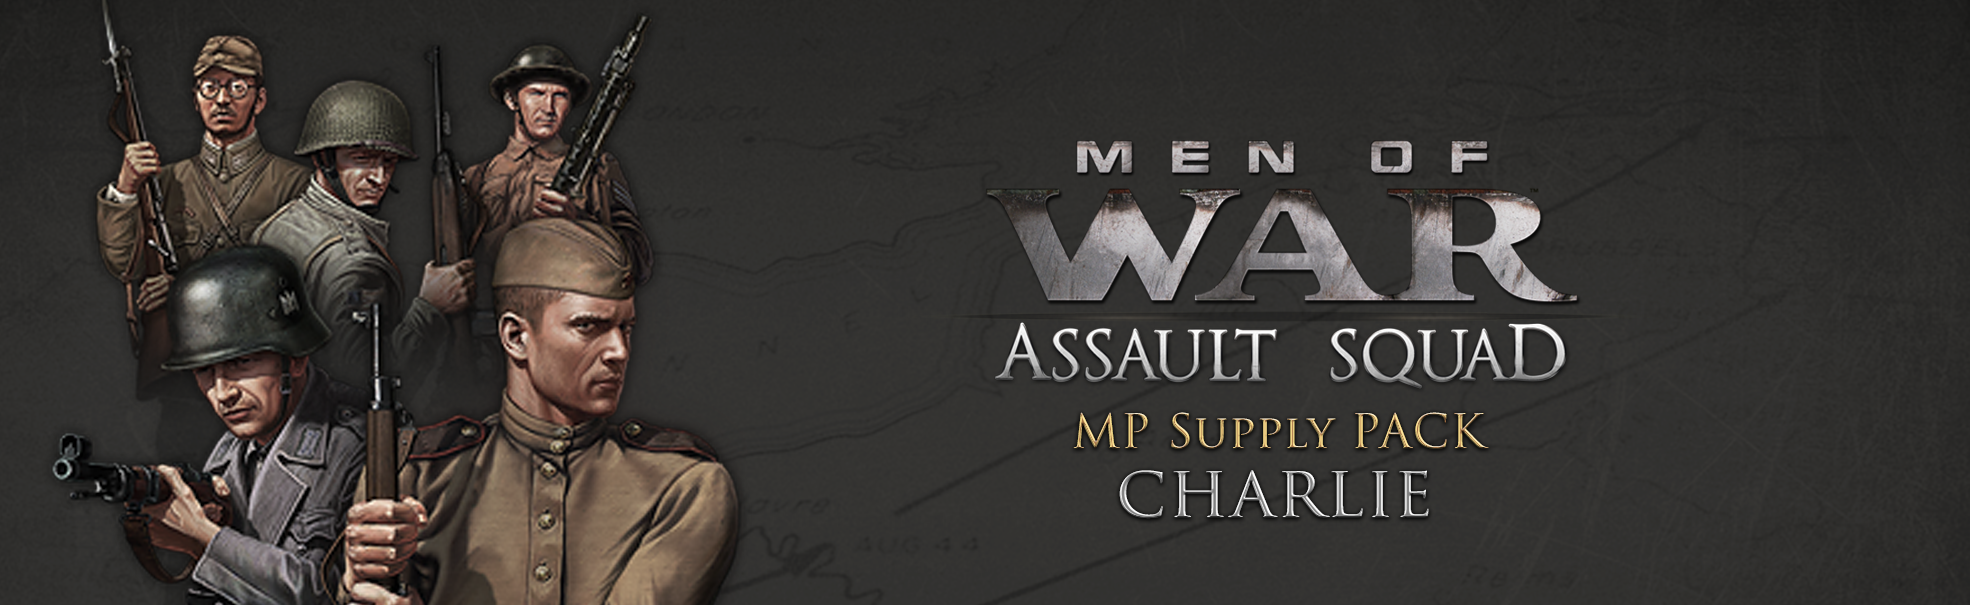 Men of War: Assault Squad - MP supply pack Charlie